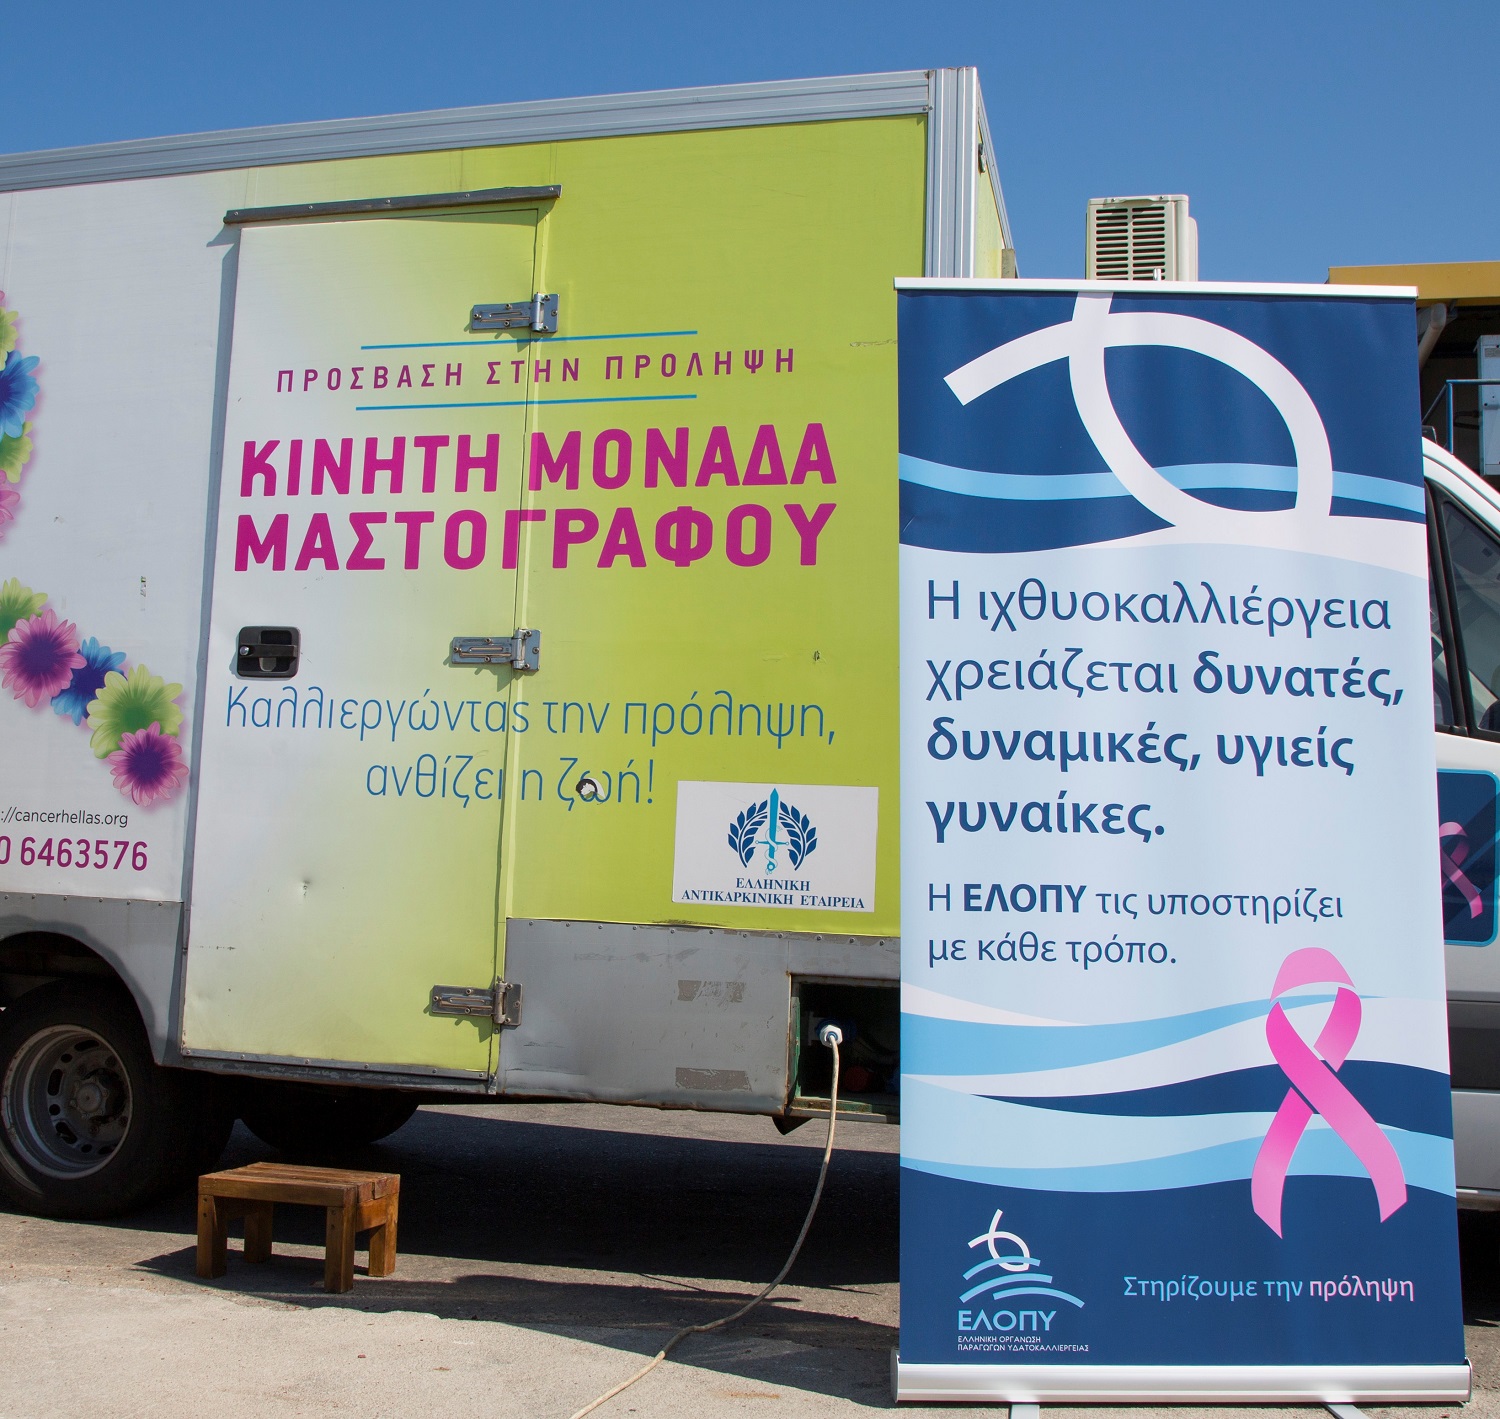 Δωρεάν μαστογραφικοί έλεγχοι στην Κάρυστο από την Ελληνική Οργάνωση Παραγωγών Υδατοκαλλιέργειας